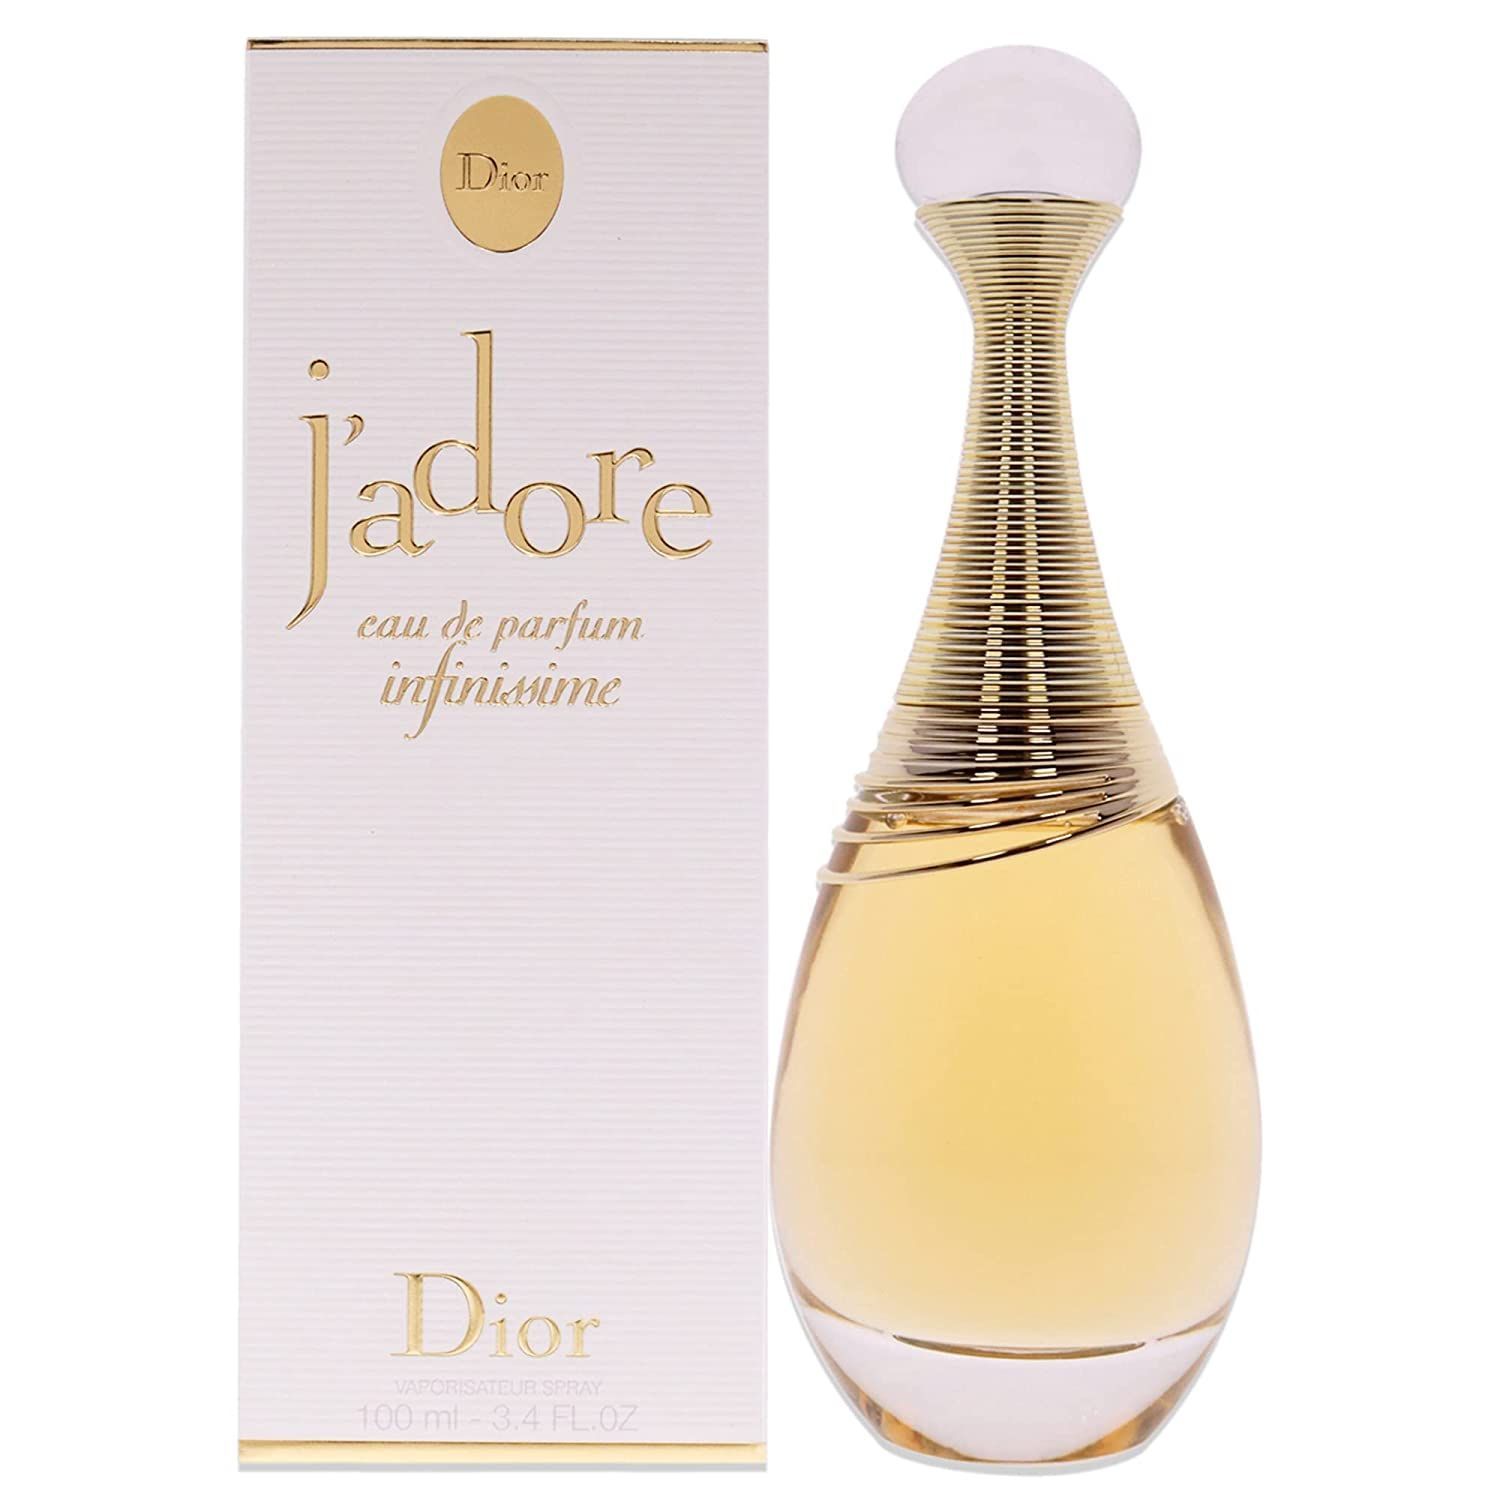 Christian Dior Jadore 100 ml. Christian Dior Jadore Infinissime. Christian Dior j'adore, 100 ml. Dior Jadore EDP. Dior j adore цены